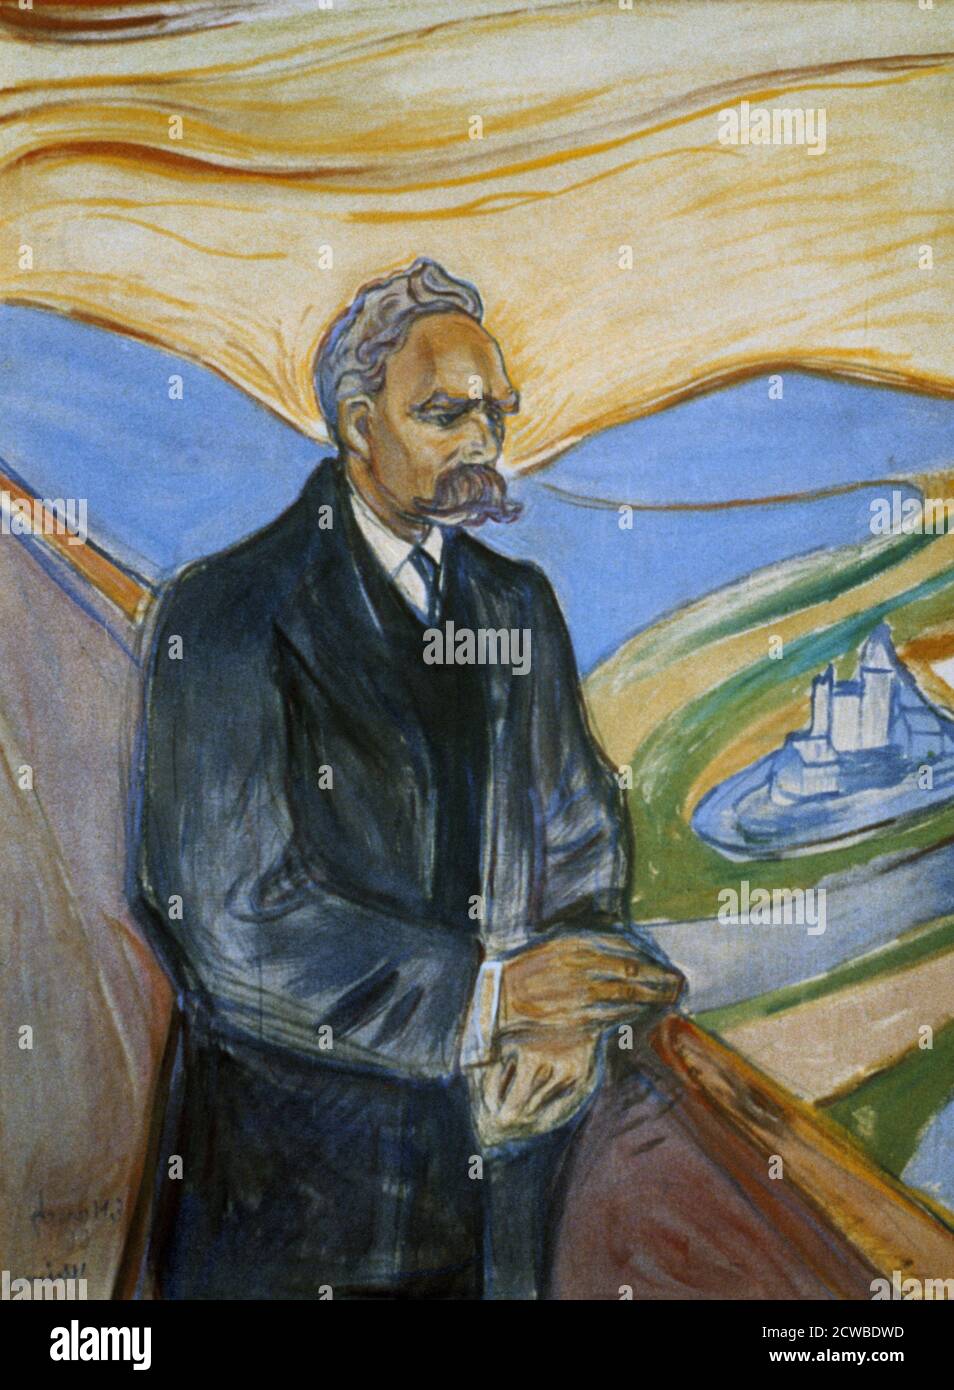 Friedrich Nietzsche', 1906 artiste: Edvard Munch. Edvard Munch est un peintre expressionniste et imprimeur norvégien. Il a joué un grand rôle dans l'expressionnisme allemand. Banque D'Images